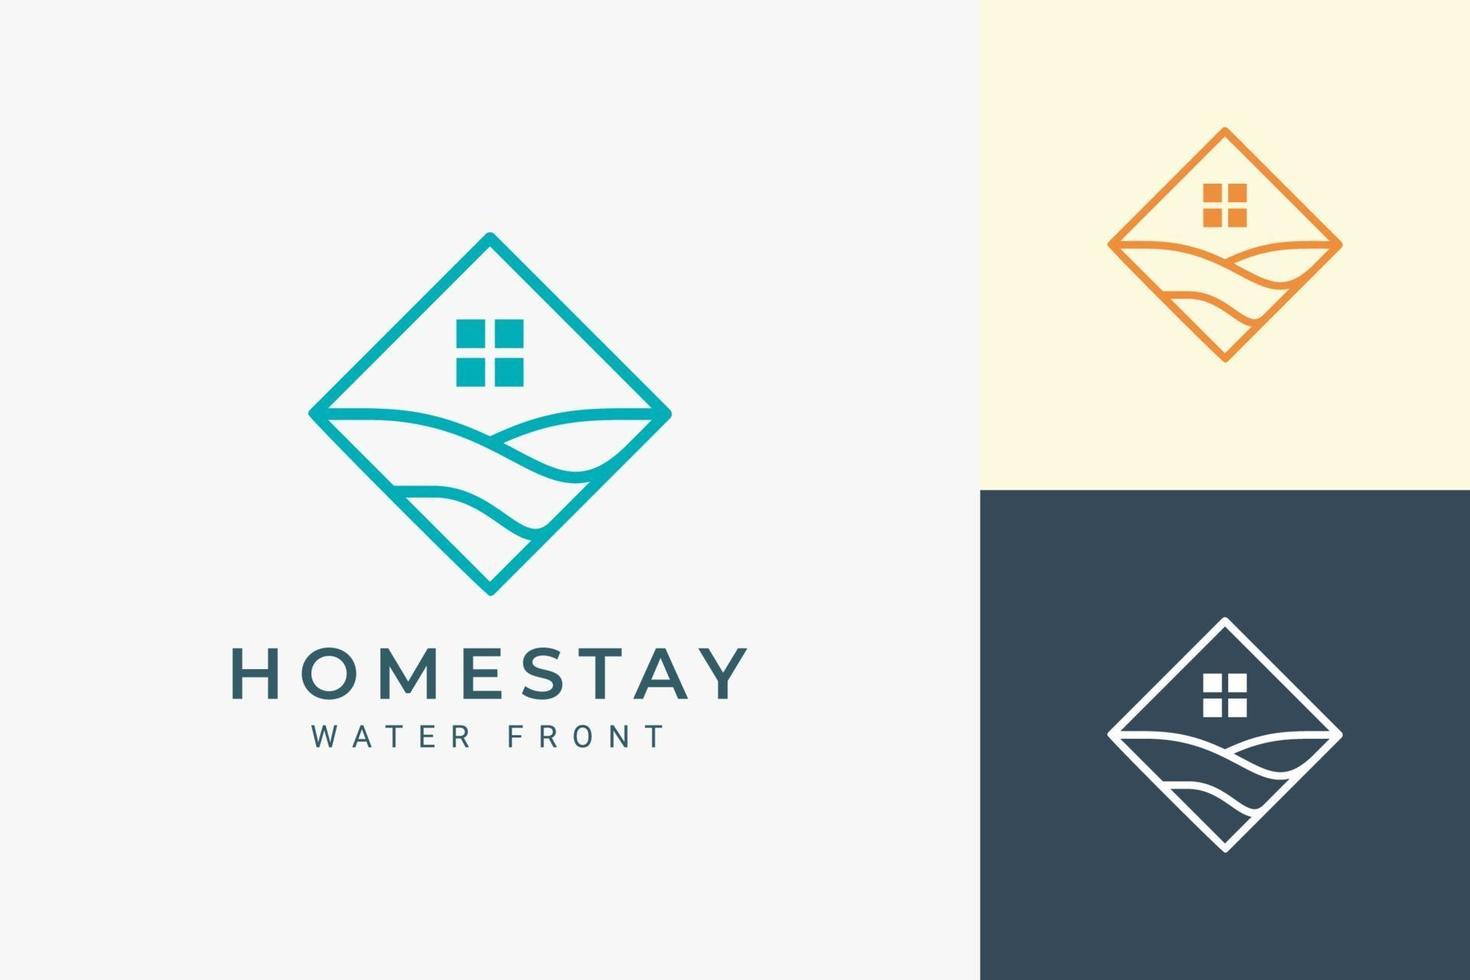 Resort or hotel logo in simple rhombus and ocean wave vector